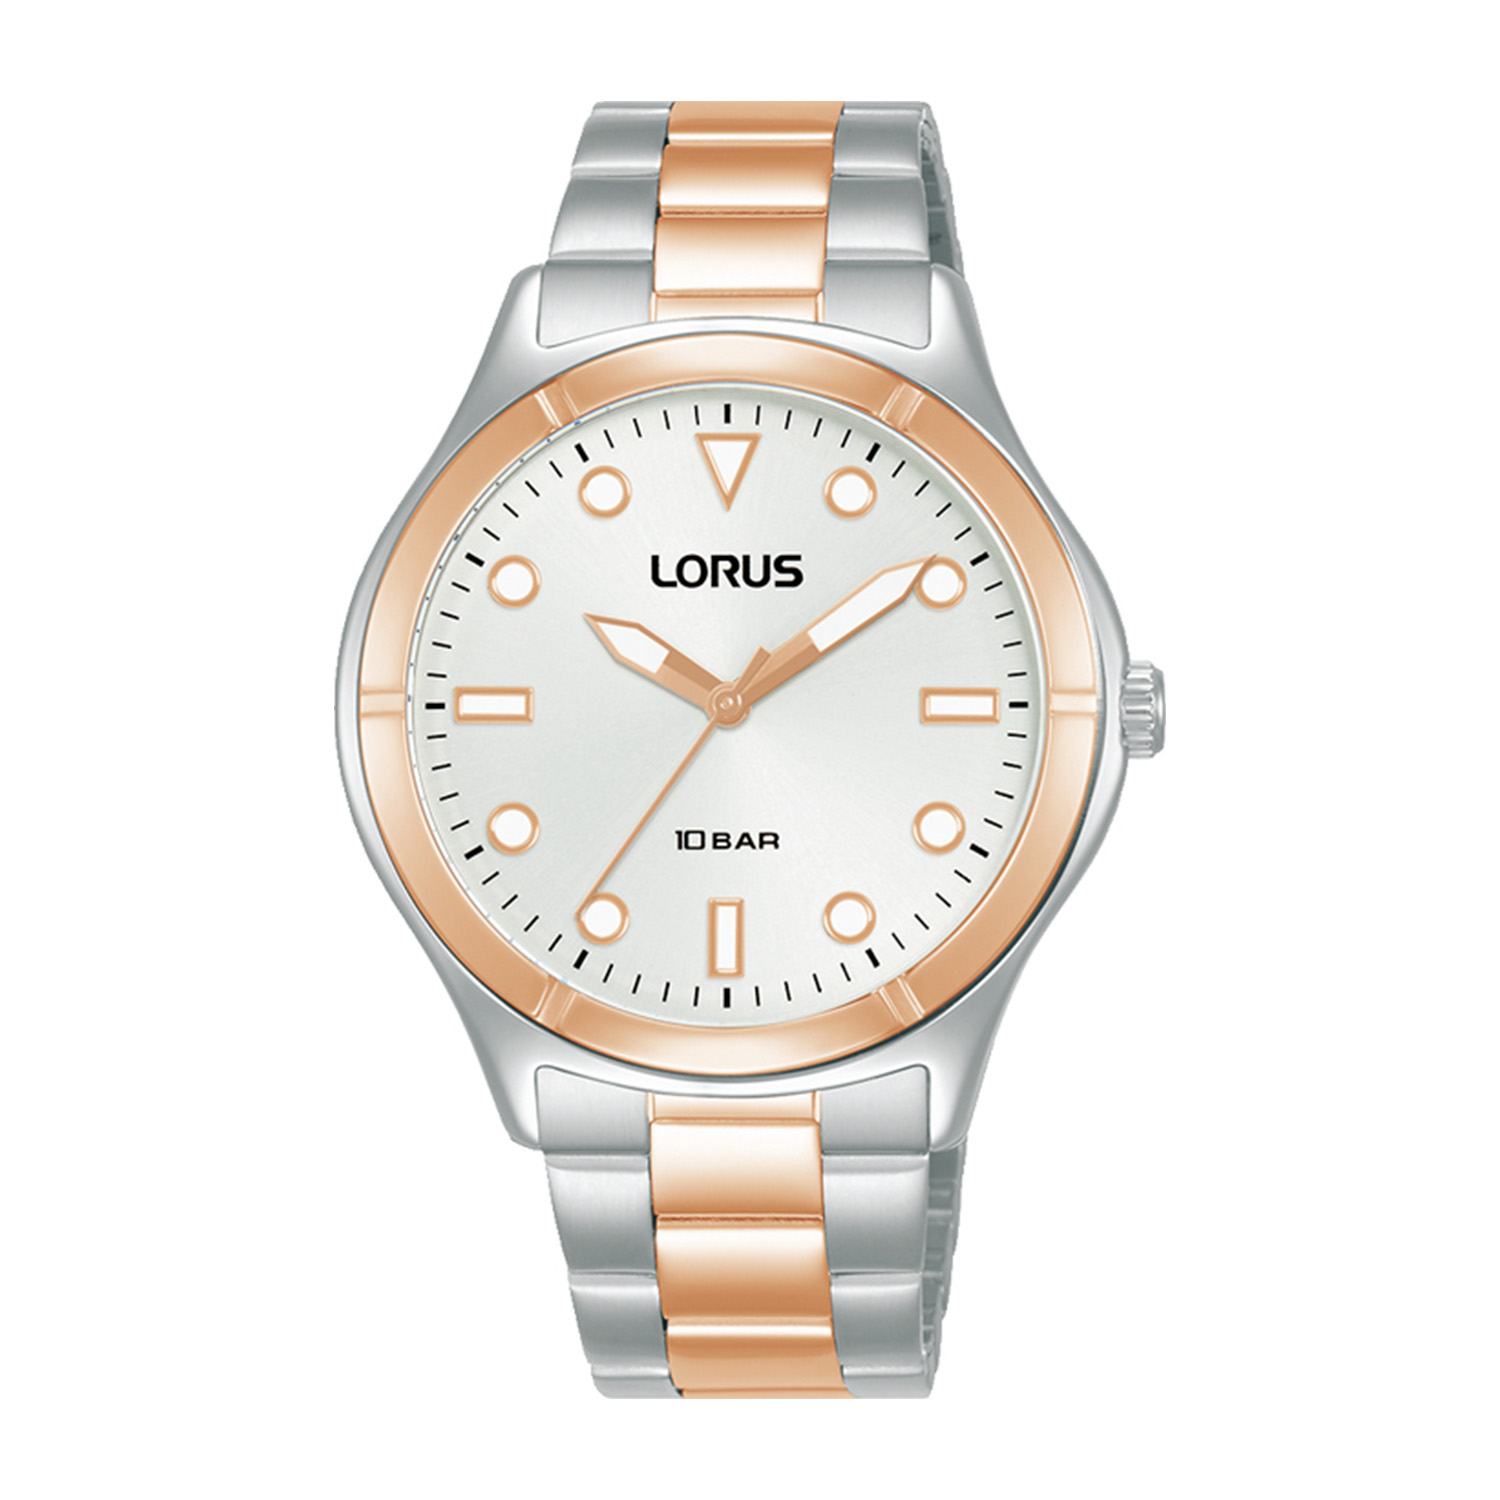 Γυναικείο ρολόι LORUS από ασημί και ροζ ανοξείδωτο ατσάλι με λευκό καντράν και μπρασελέ.